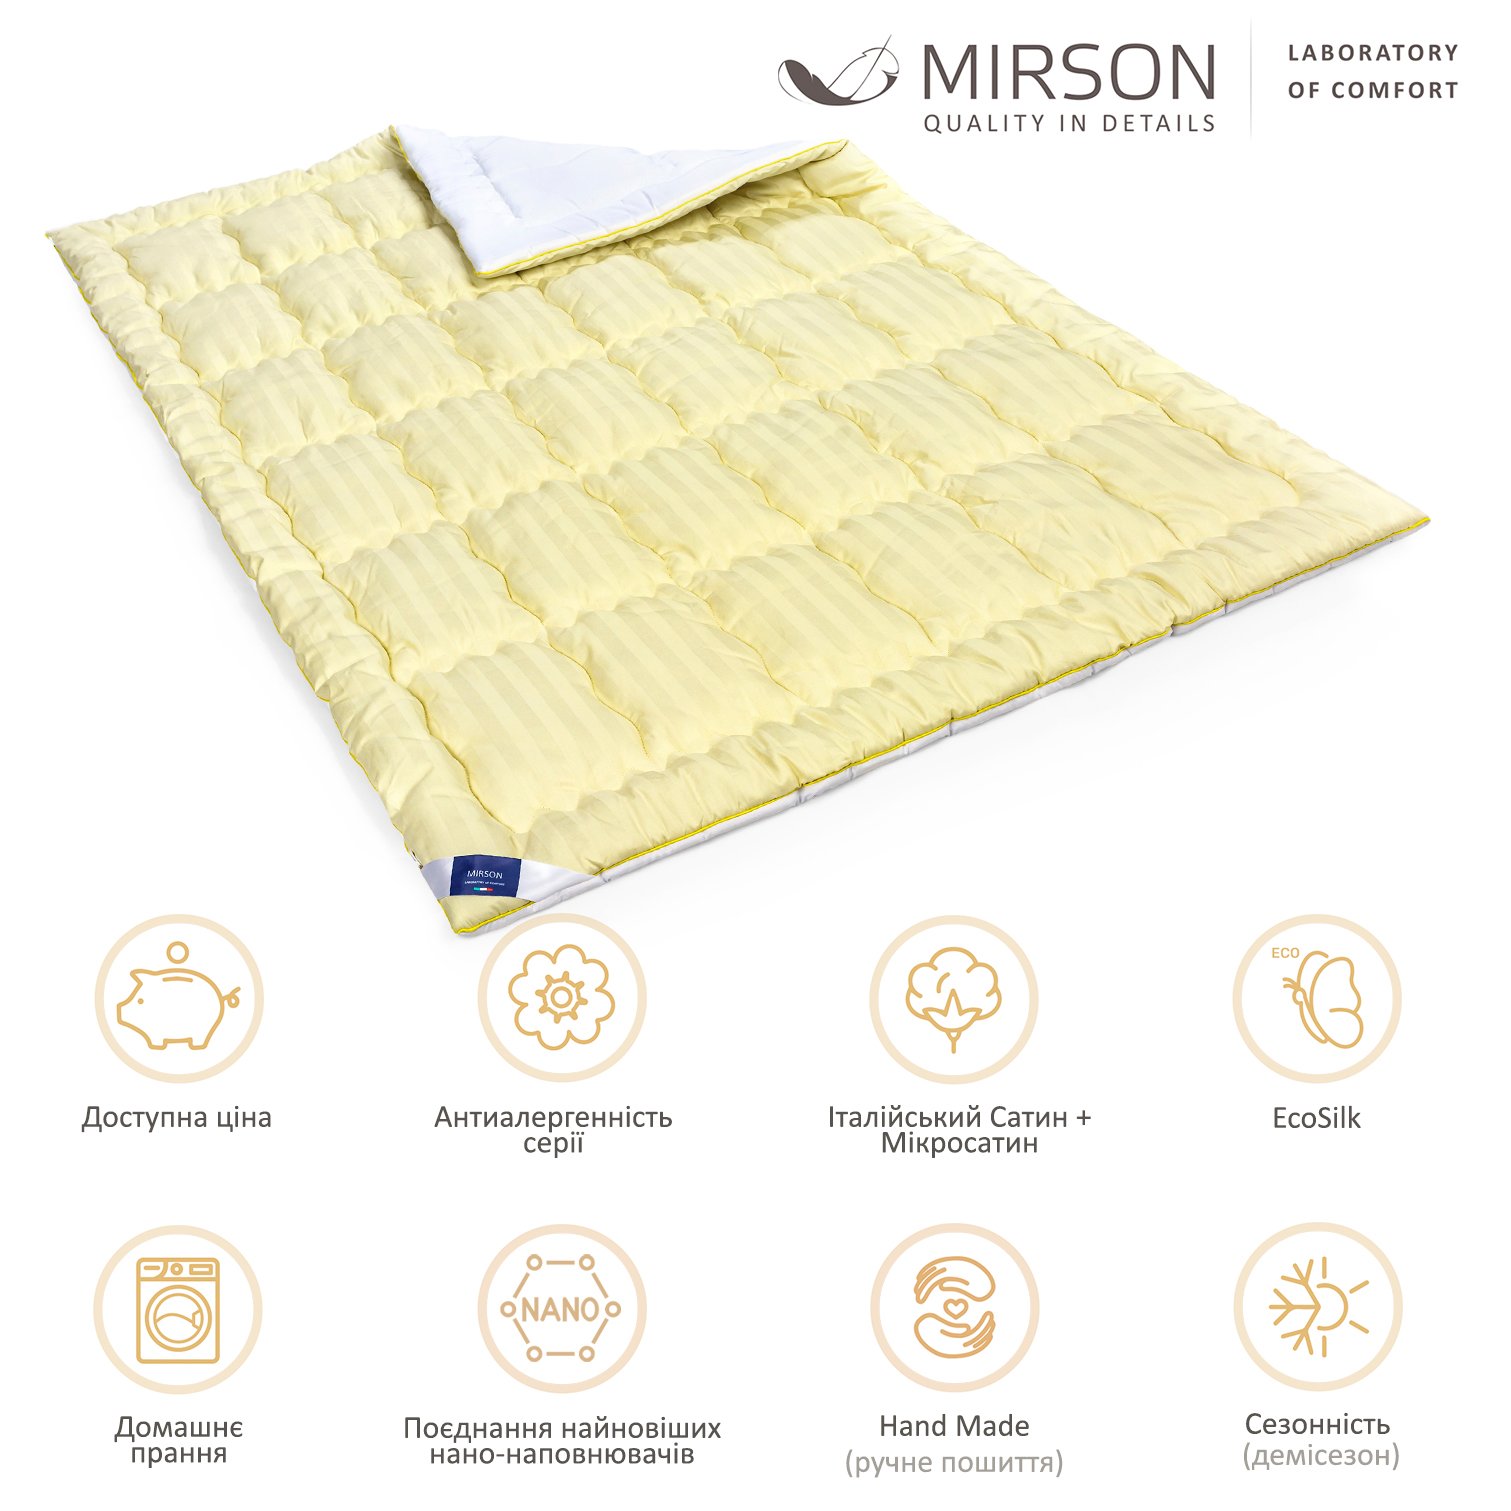 Одеяло антиаллергенное MirSon Carmela Hand Made EcoSilk №0552, демисезонное, 140x205 см, желто-белое - фото 6